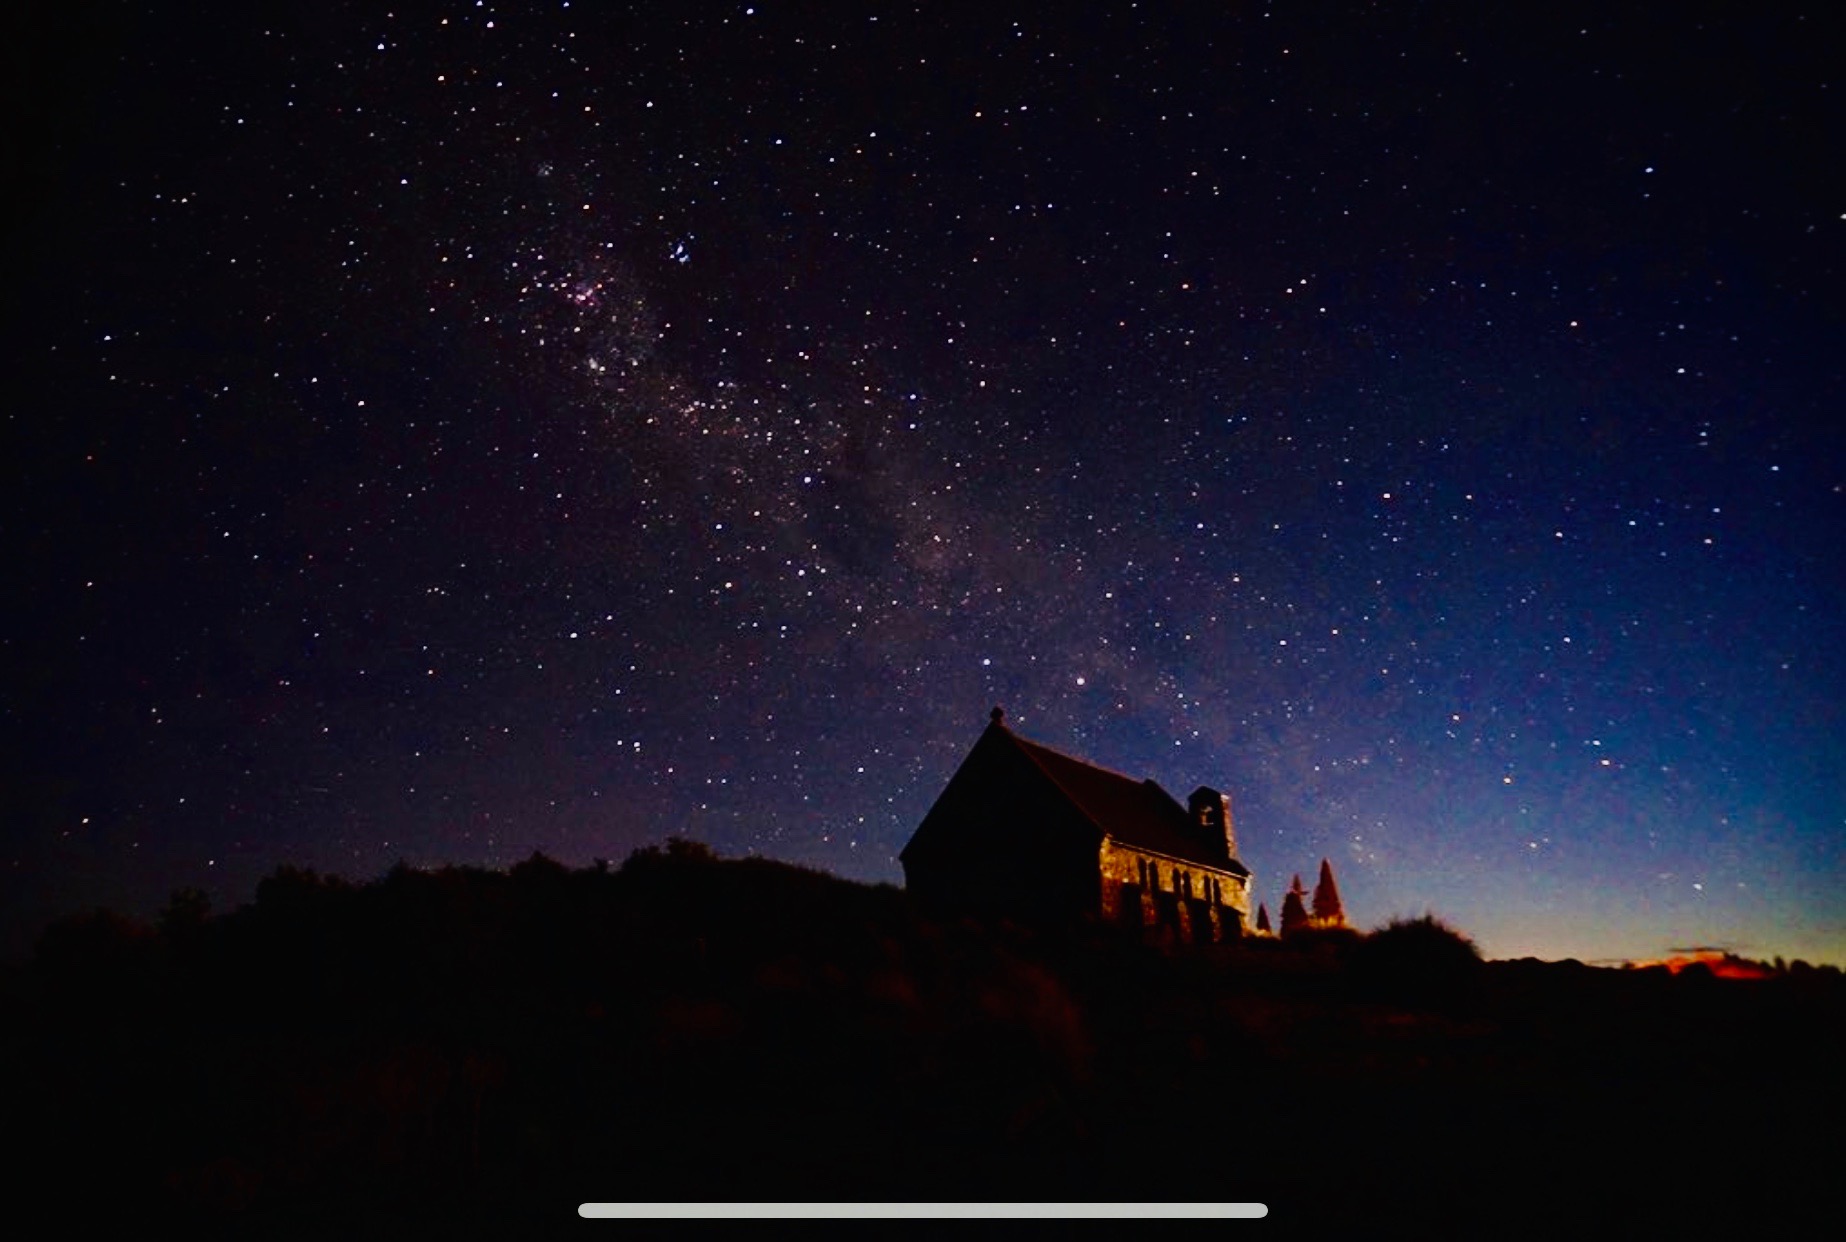 ニュージーランド編 Iphoneでも天の川が撮れるほどの美しさ テカポ湖で降るような星空に包まれる感動体験 Leemanブログ